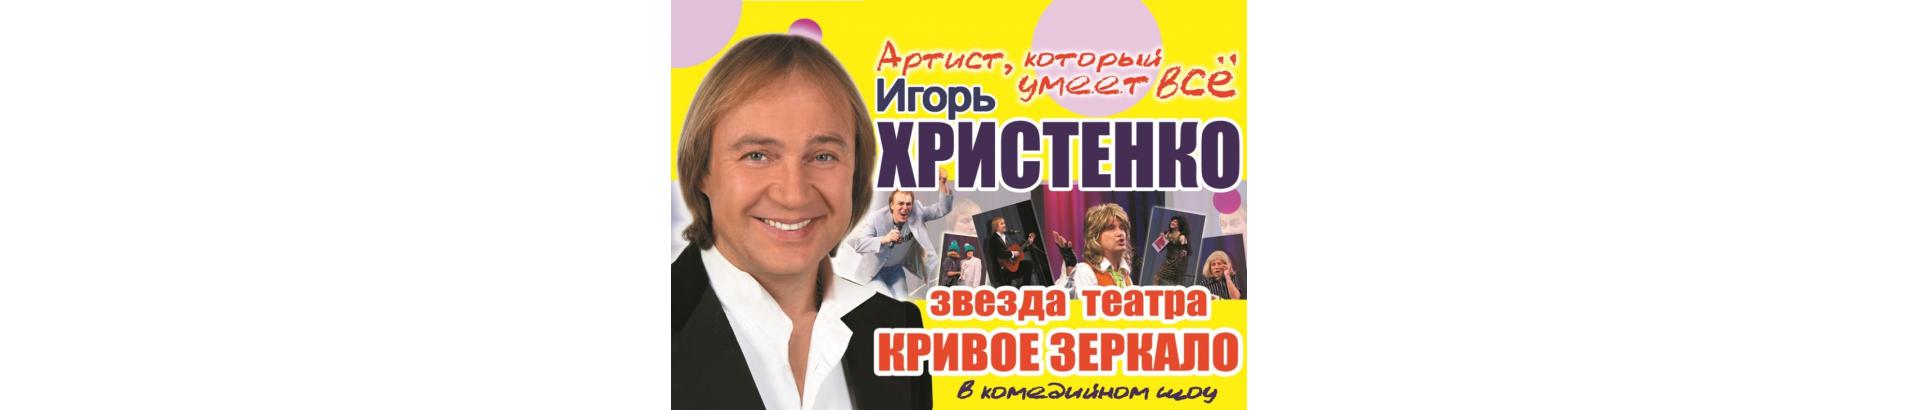 Вечер юмора с Игорем Христенко